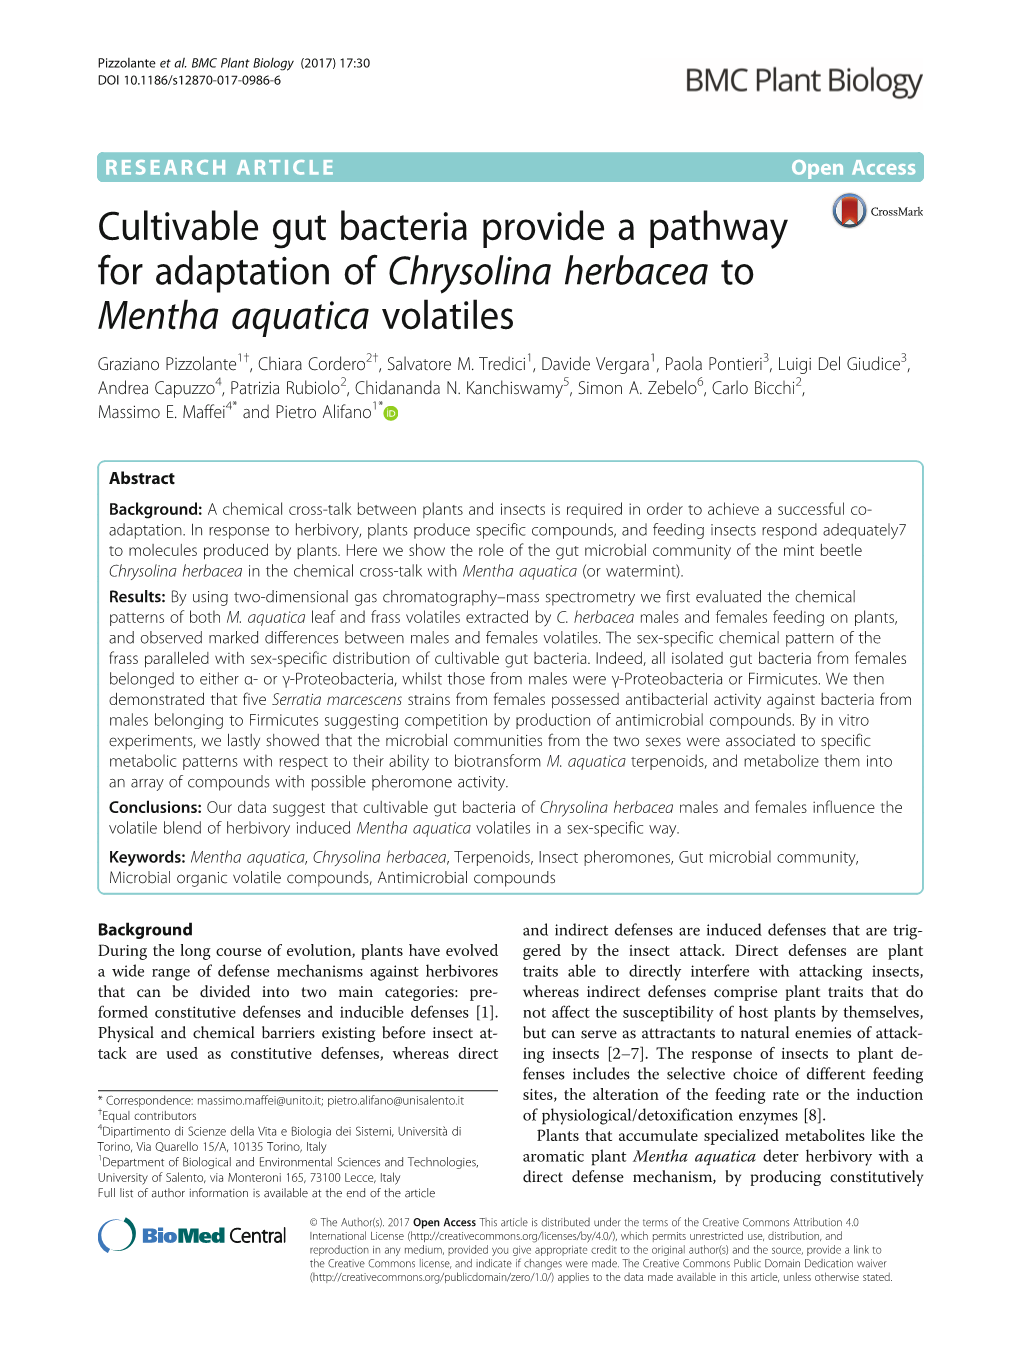 Cultivable Gut Bacteria Provide a Pathway for Adaptation of Chrysolina Herbacea to Mentha Aquatica Volatiles Graziano Pizzolante1†, Chiara Cordero2†, Salvatore M